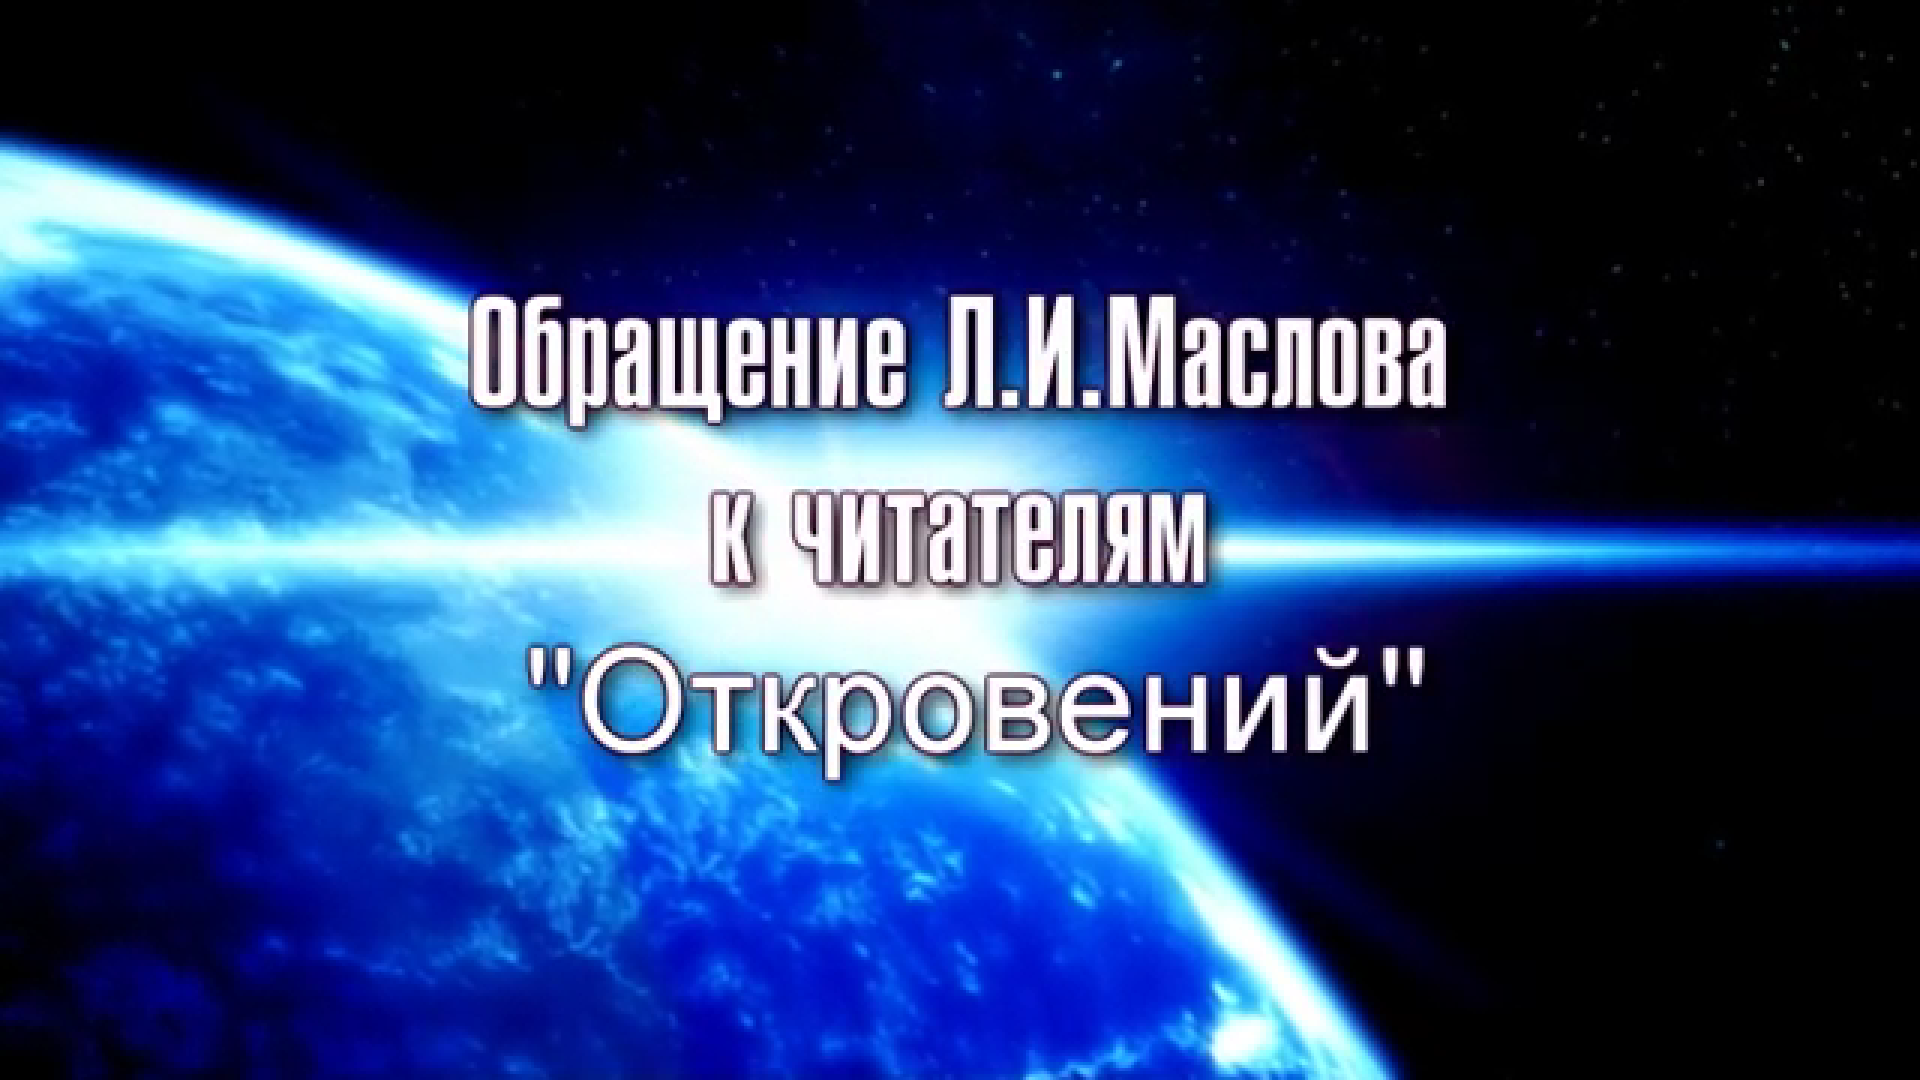 Обращение Маслова Л.И. к читателям Откровений. 2010г